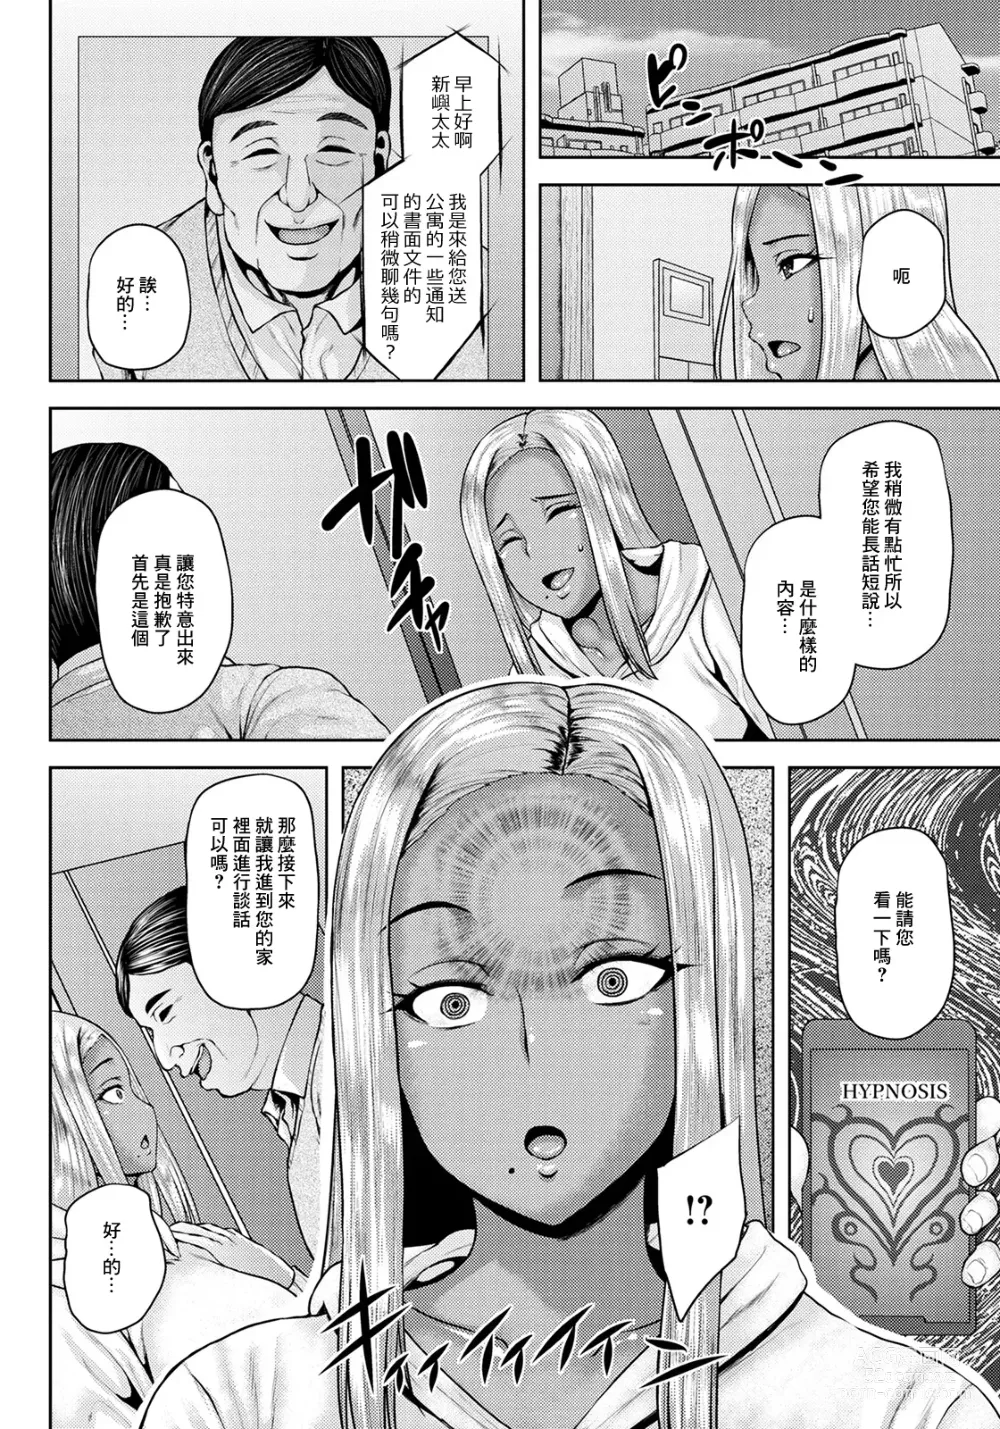 Page 4 of manga NTR Hypnosis Appli